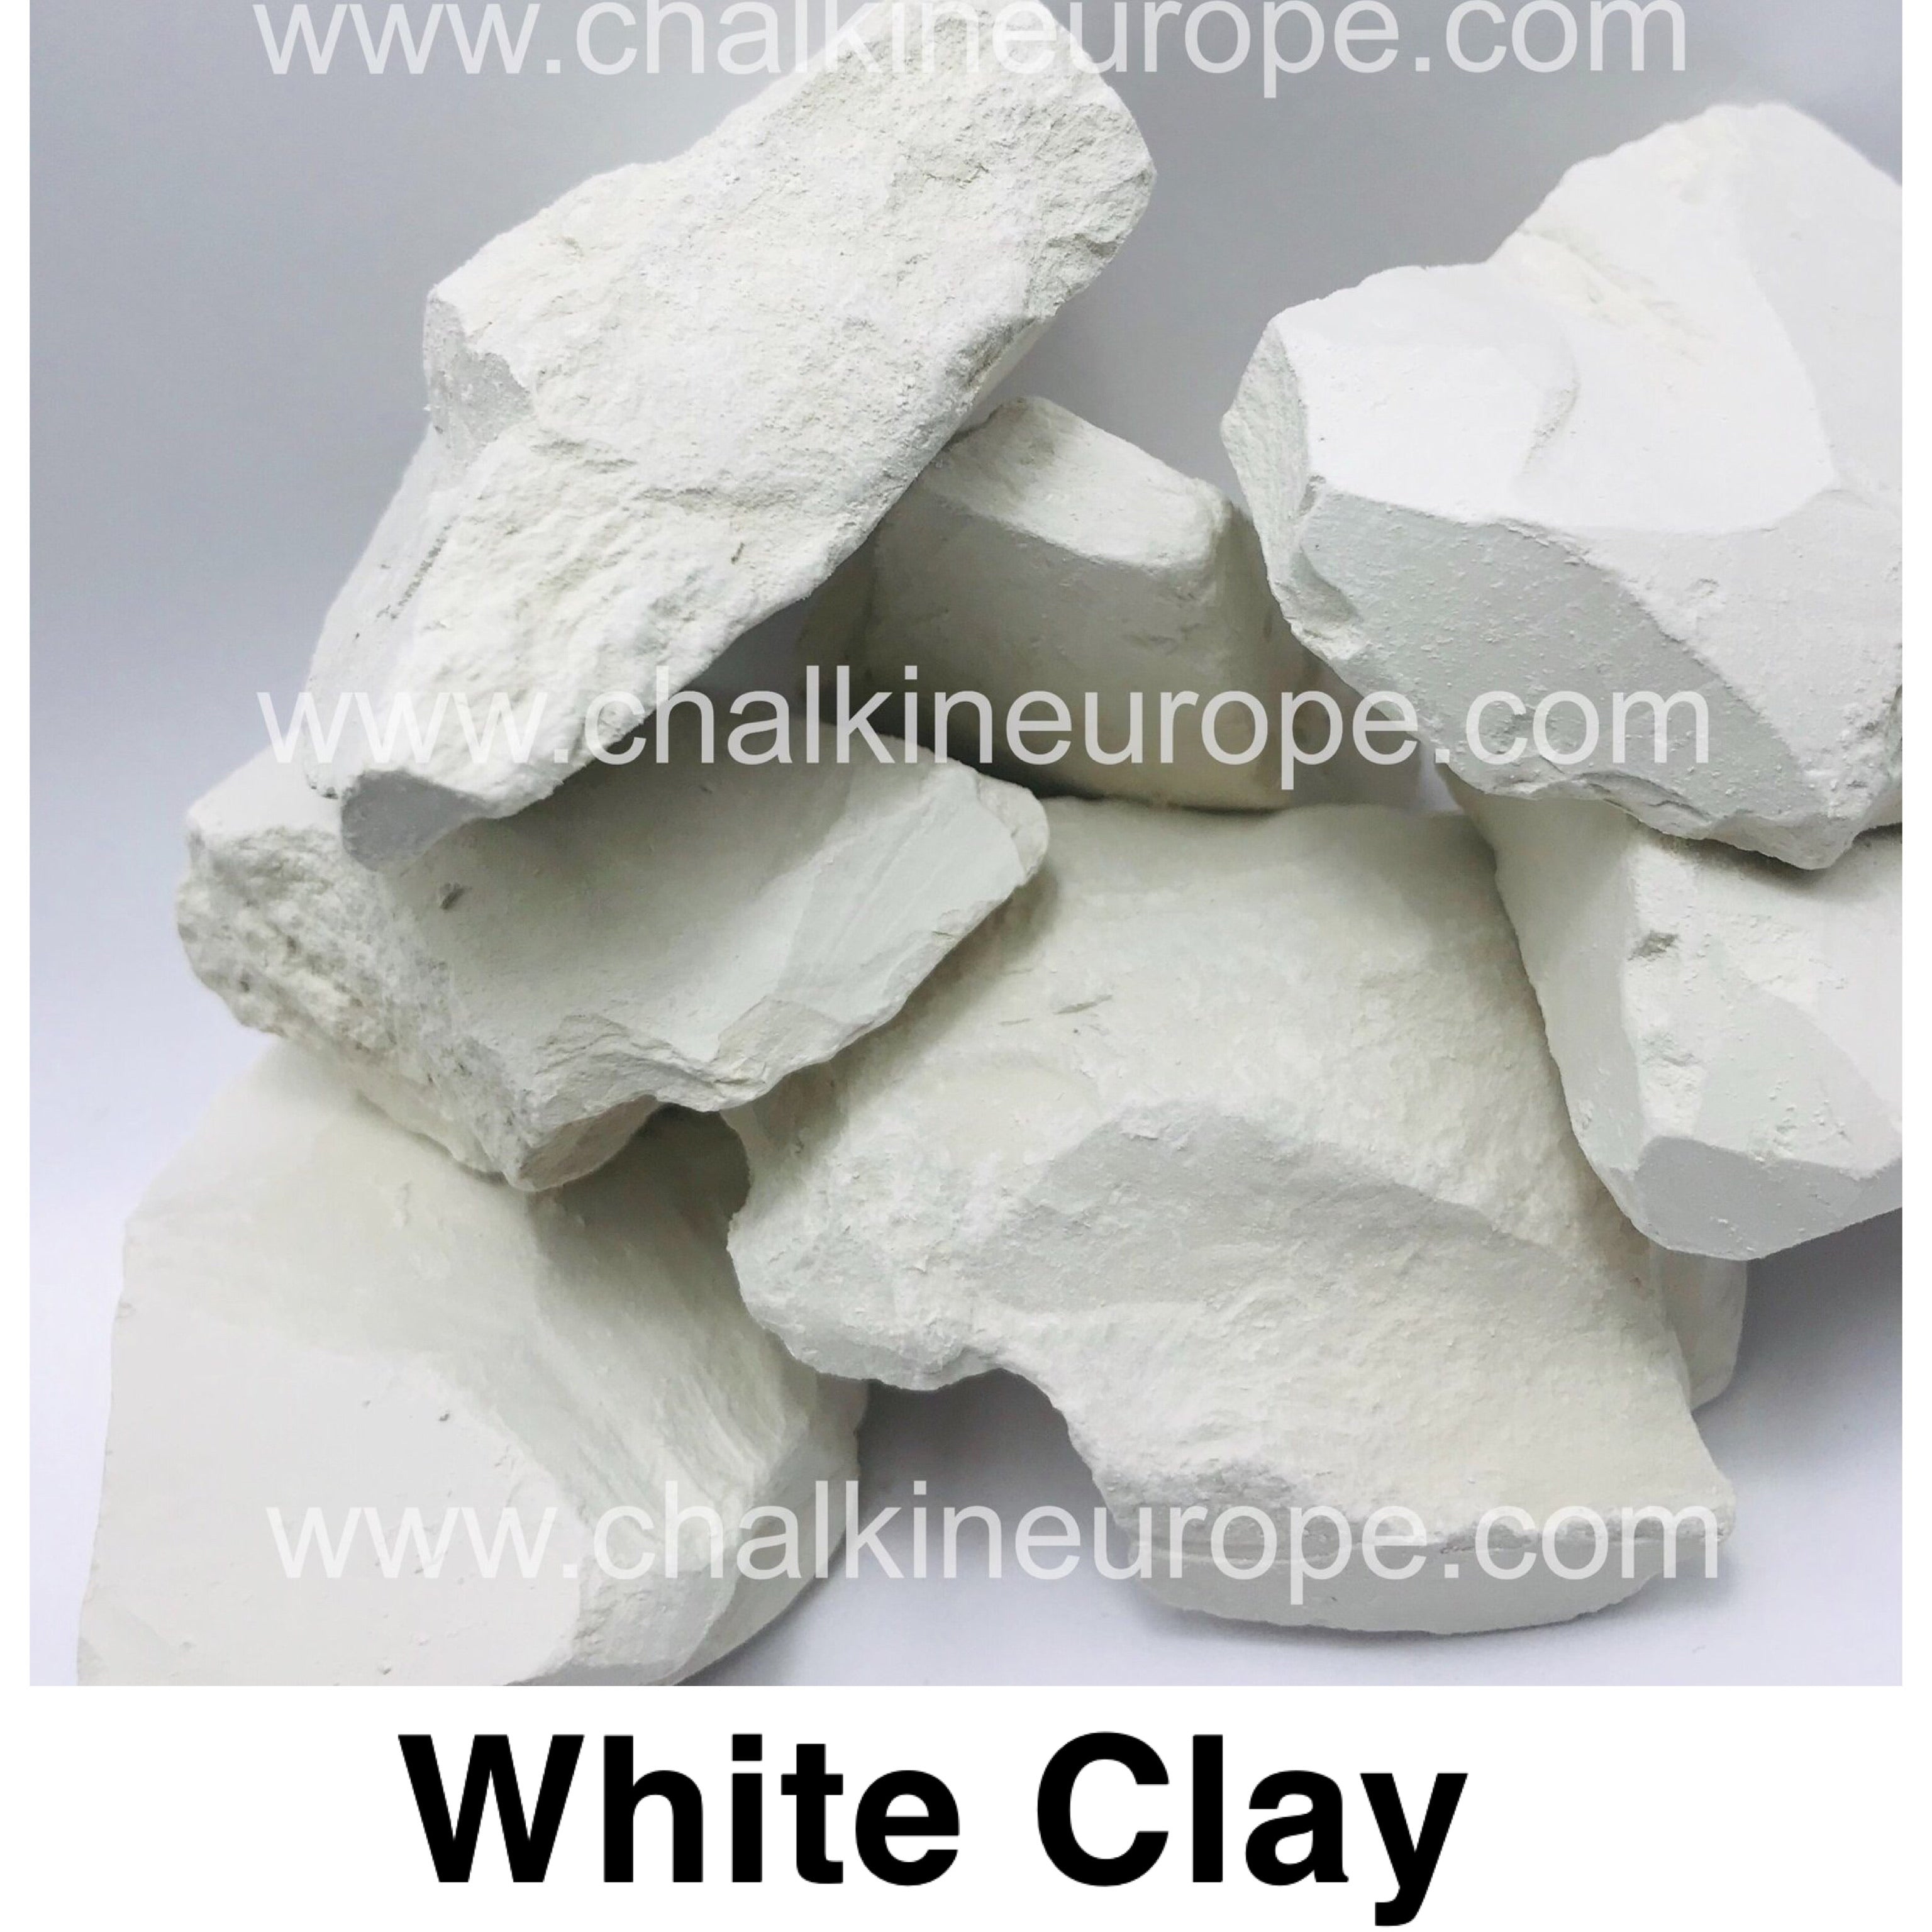 Jedlá bílá hlína - Chalkineurope